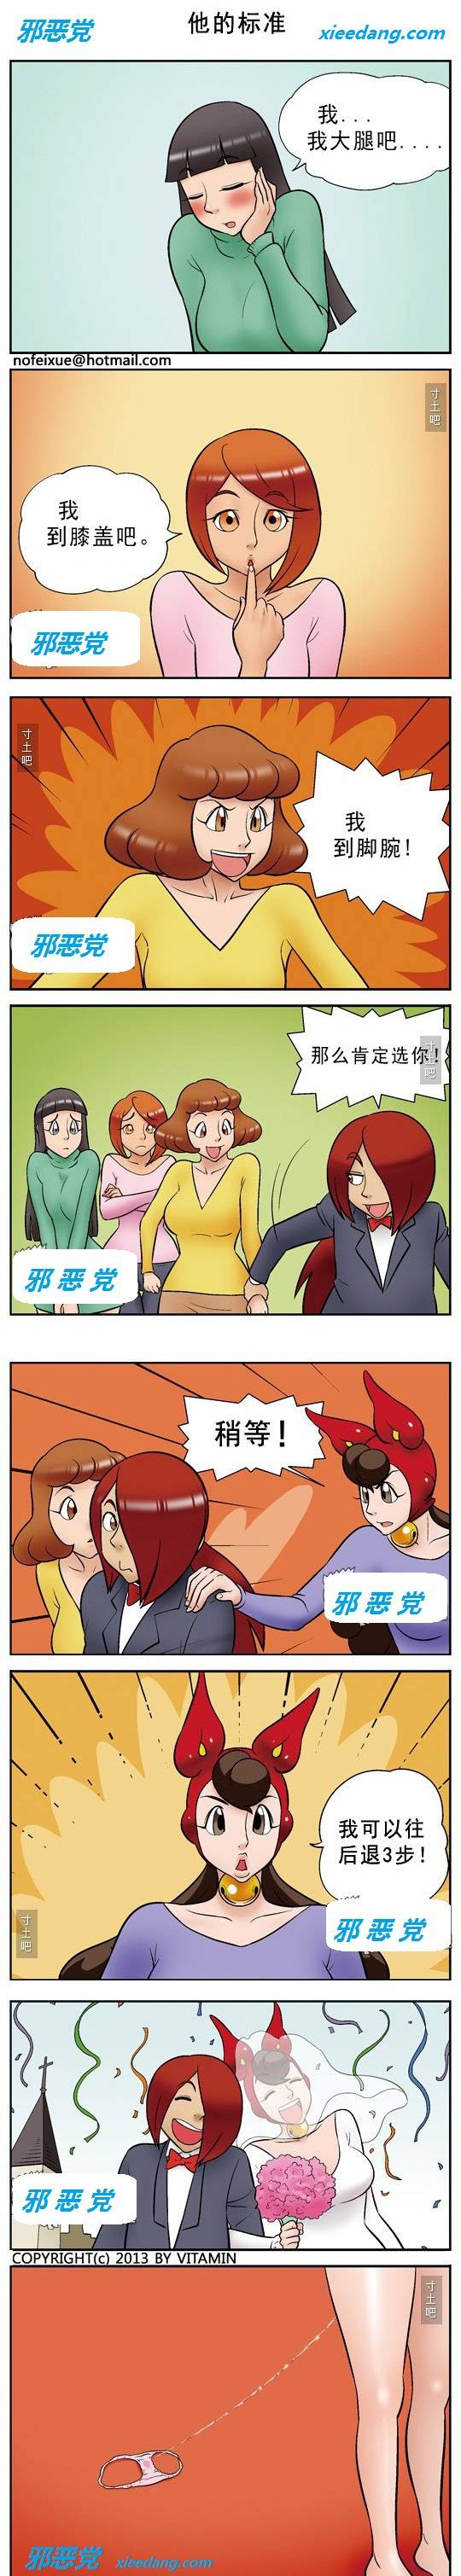 邪恶漫画爆笑囧图第355刊：男人选老婆的标准